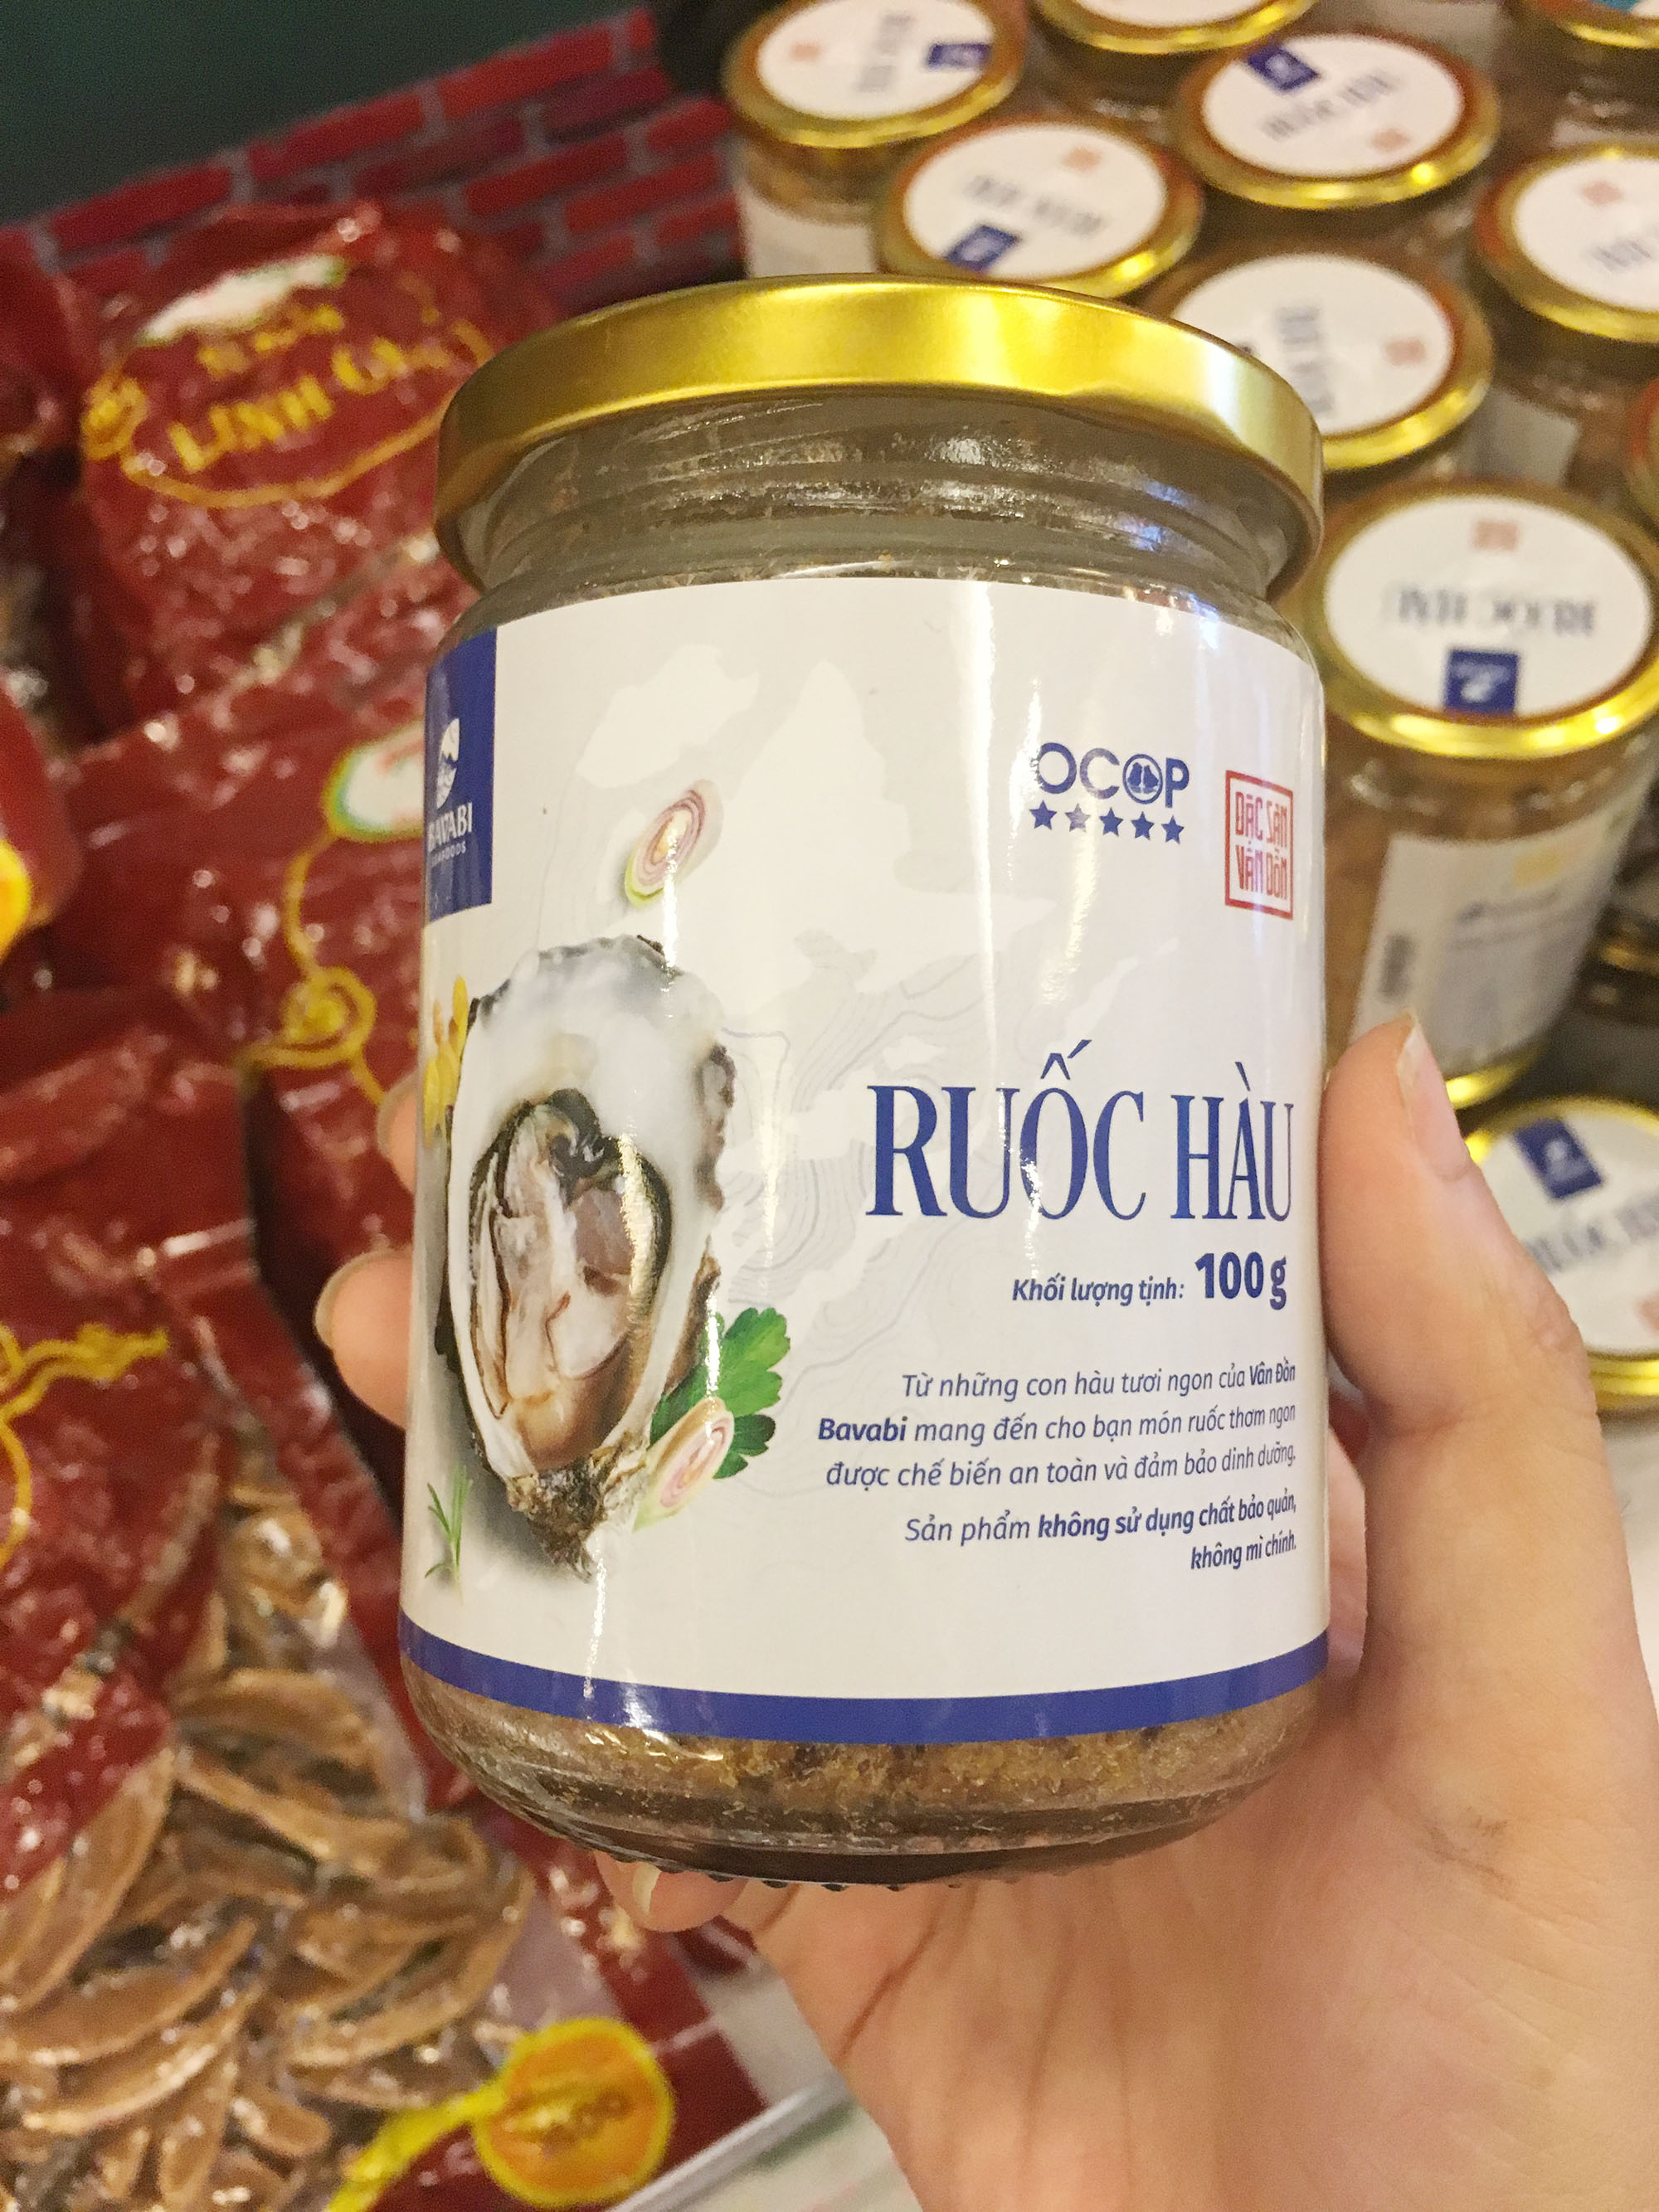 Bao bì mới sản phẩm ruốc hàu của Công ty TNHH Sản xuất và Thương mại thủy sản Quảng Ninh.